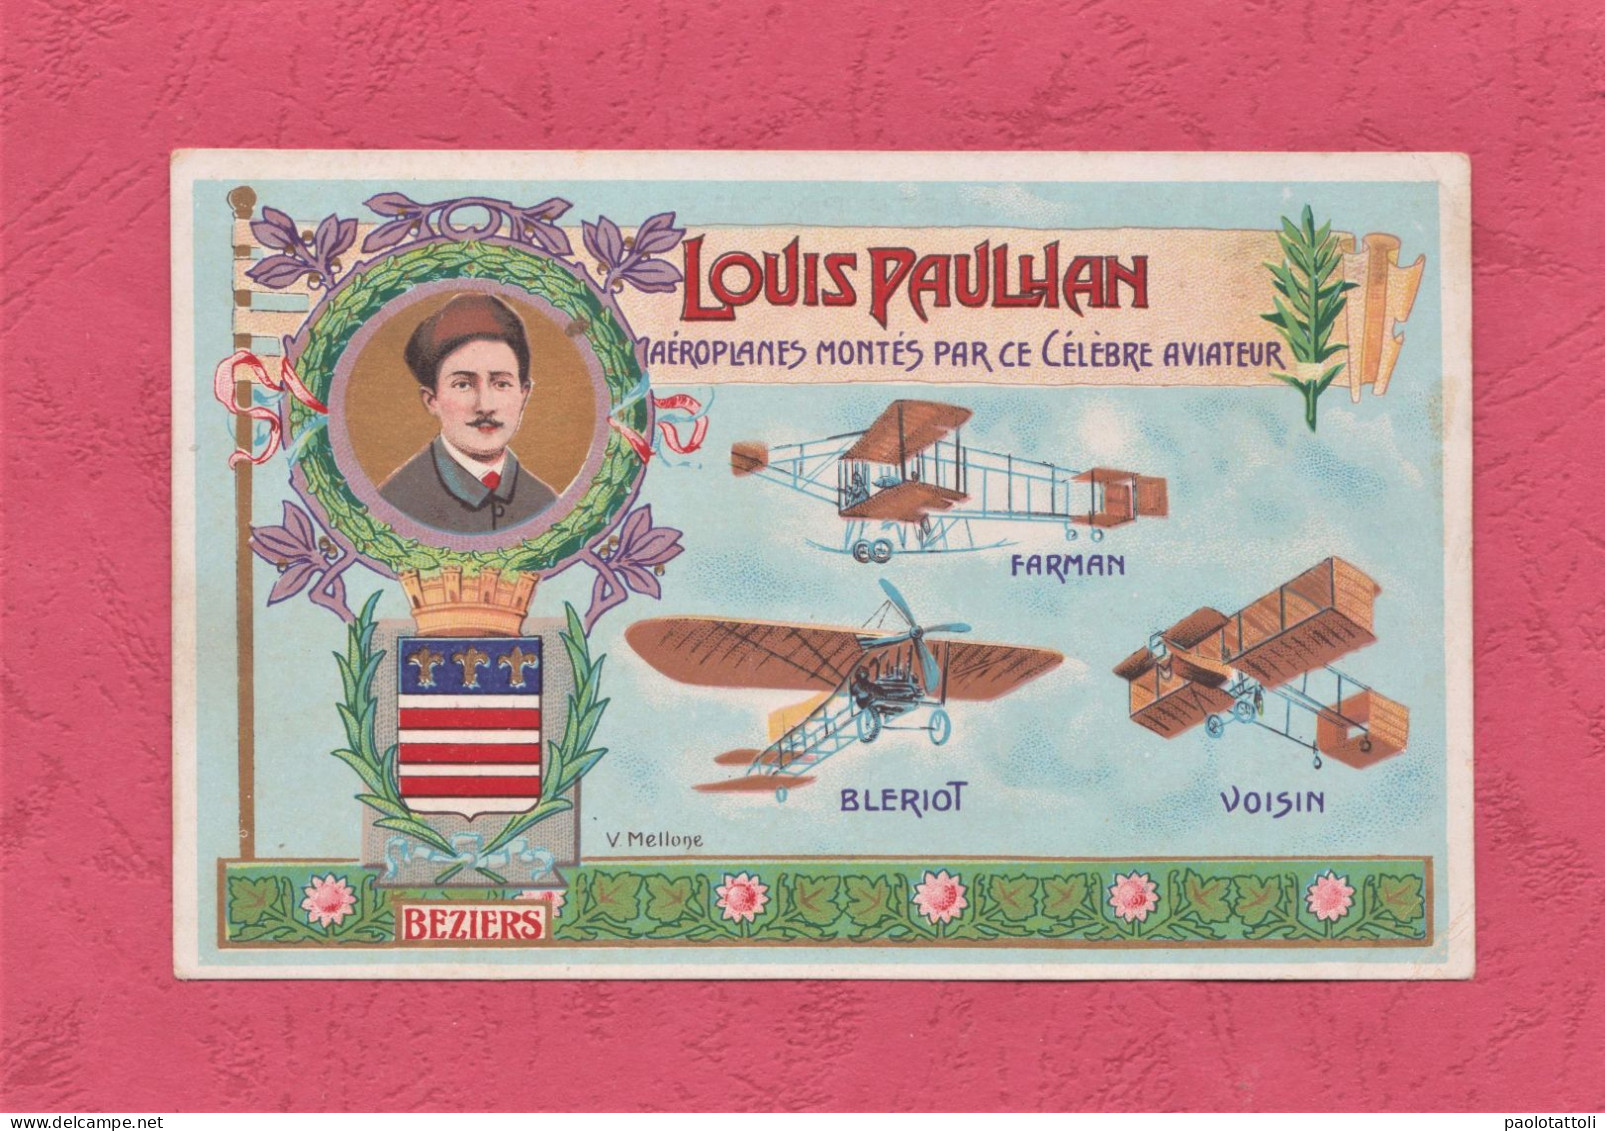 Louis Paulhan, Aeroplanes Montès Par Ce Cèlèbre Aviateur.Signed By Beziers. Small Size, New, Divided Back, Ed. A. Mellon - ....-1914: Precursors